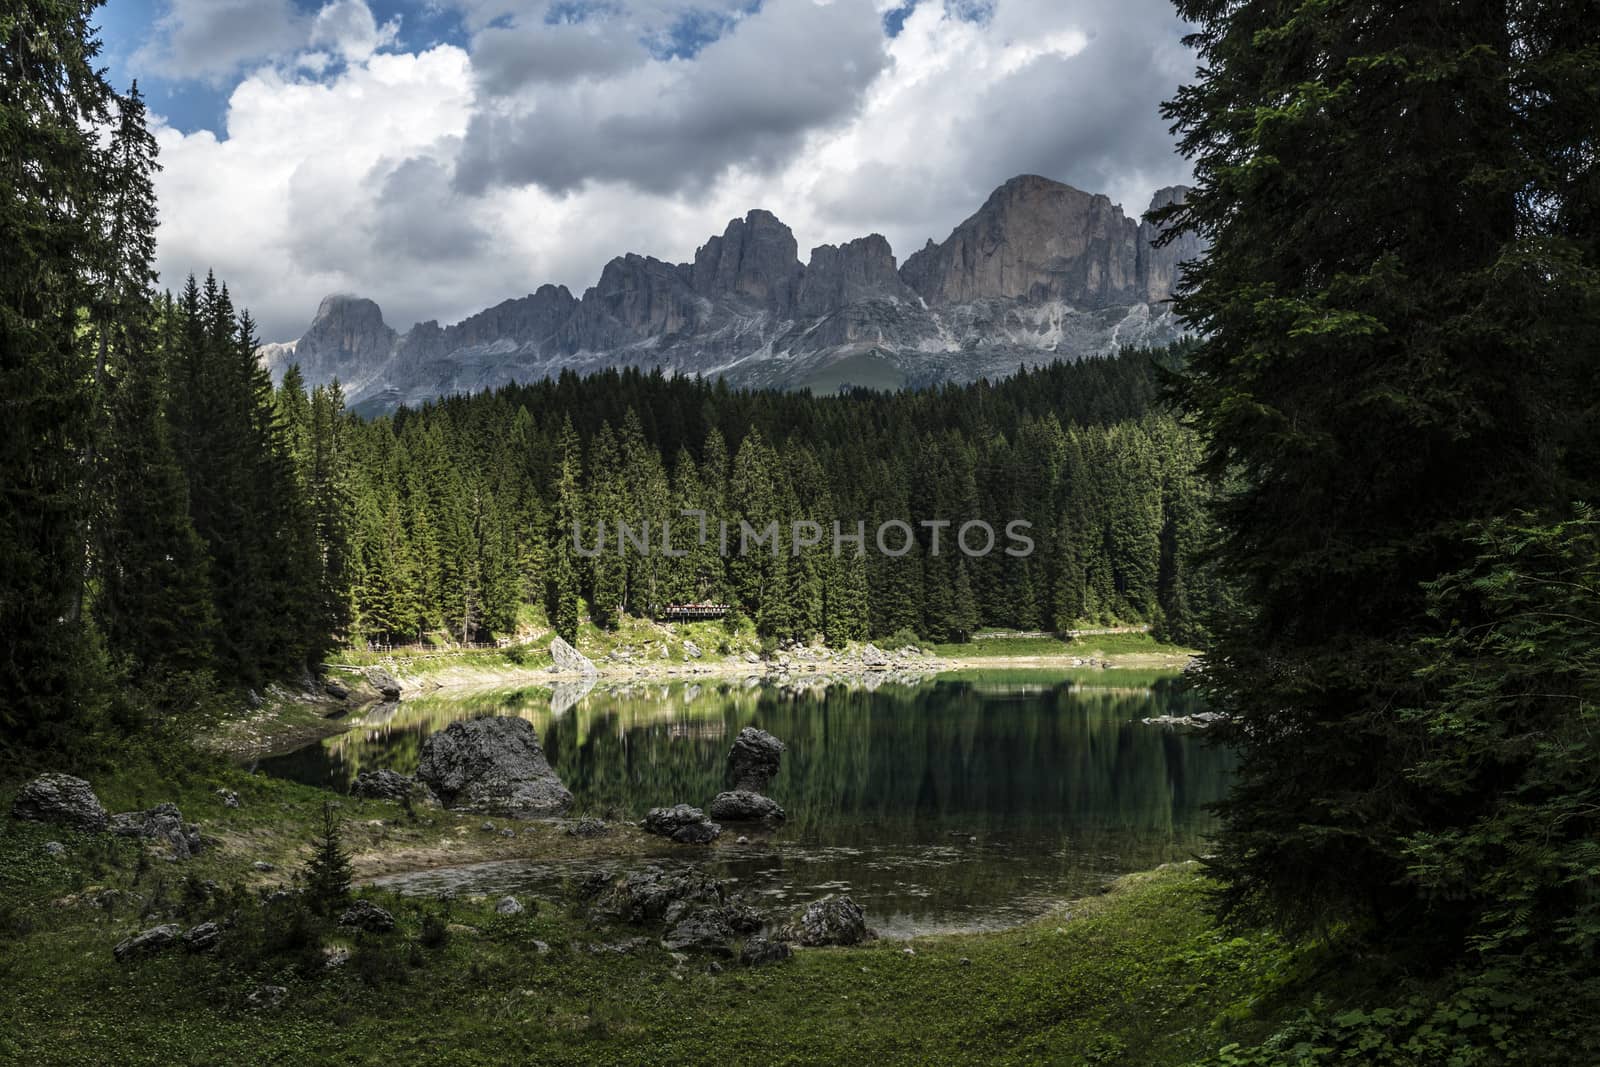 Carezza lake and Catinaccio, Dolomites by Mdc1970